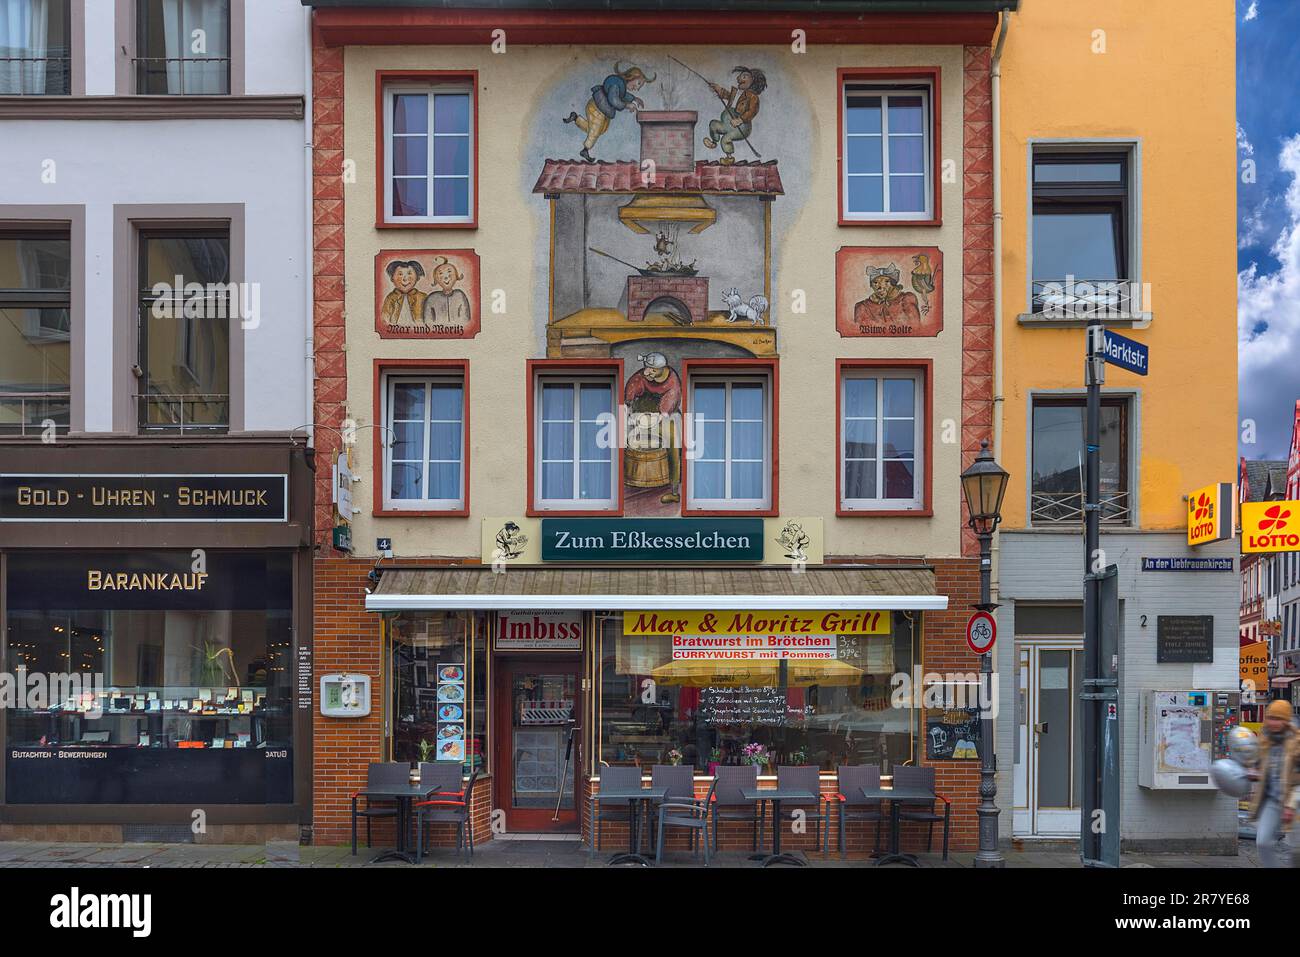 Pittura di facciata con Max e Moritz e vedova Bolte, Coblenza Renania-Palatinato, Germania Foto Stock